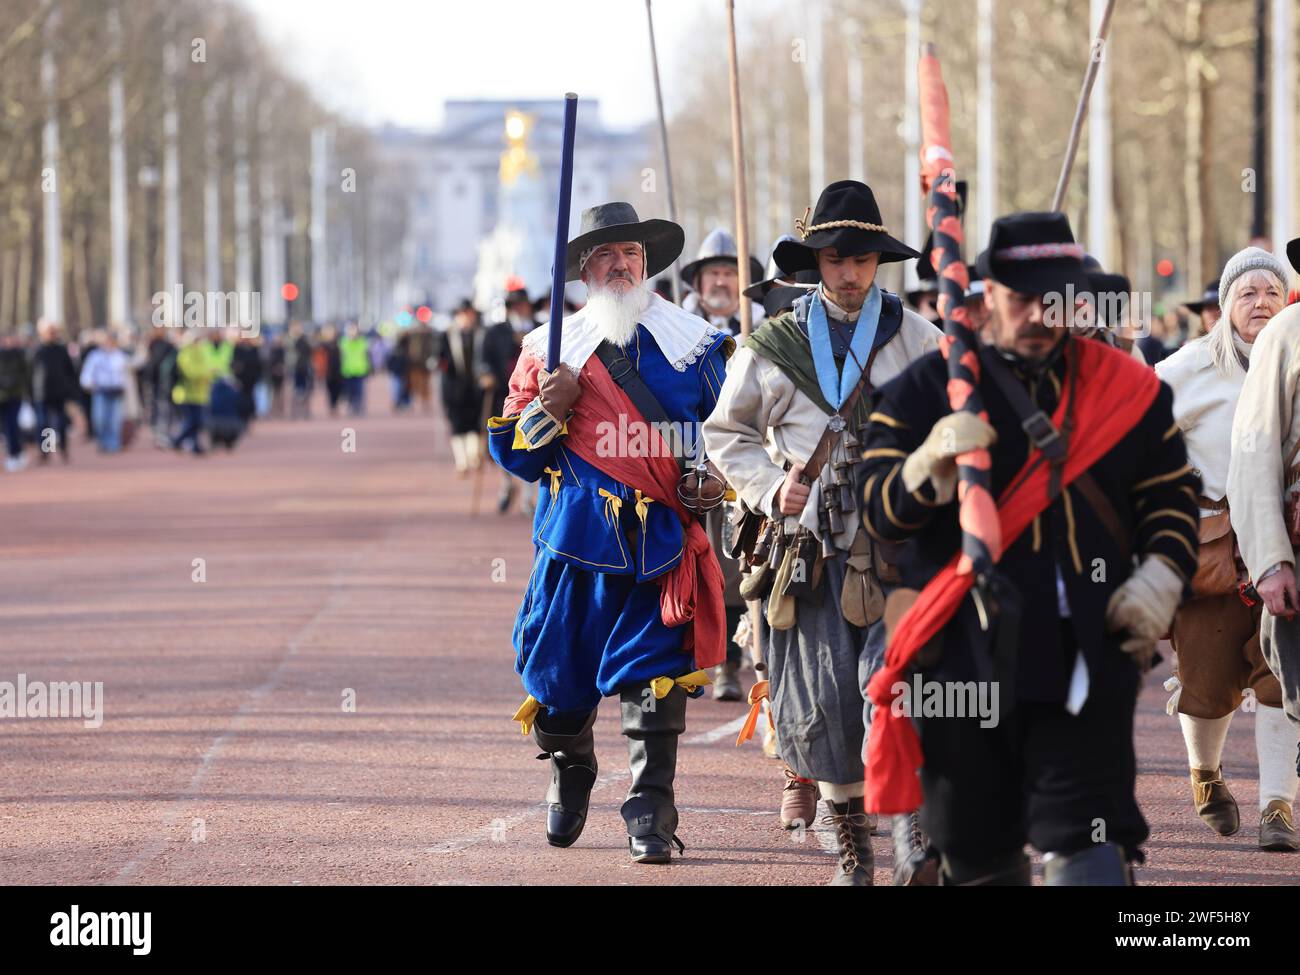 La English Civil War Society che partecipa alla loro marcia annuale sul Mall in commemorazione di re Carlo i, martirizzato il 30 gennaio 1649, Regno Unito Foto Stock